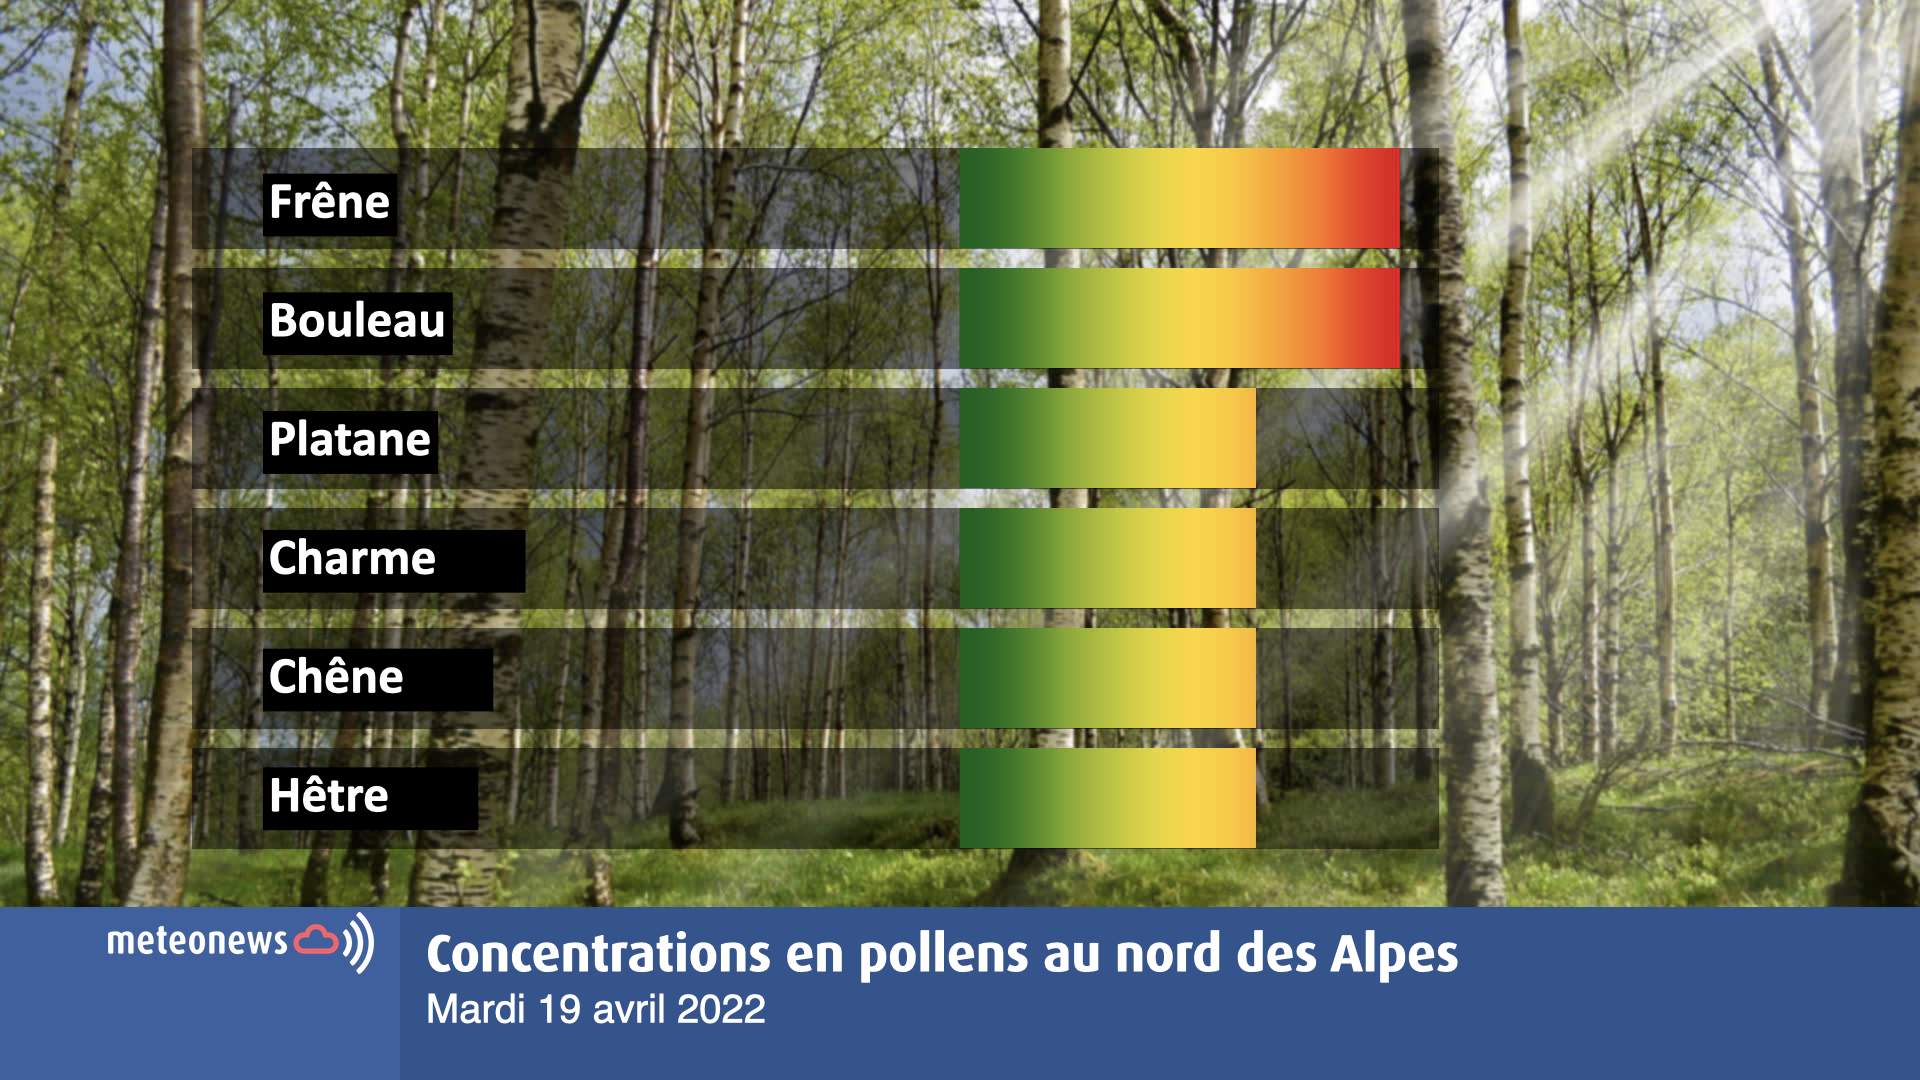 Fig. 1: Concentrations actuelles en pollens au nord des Alpes